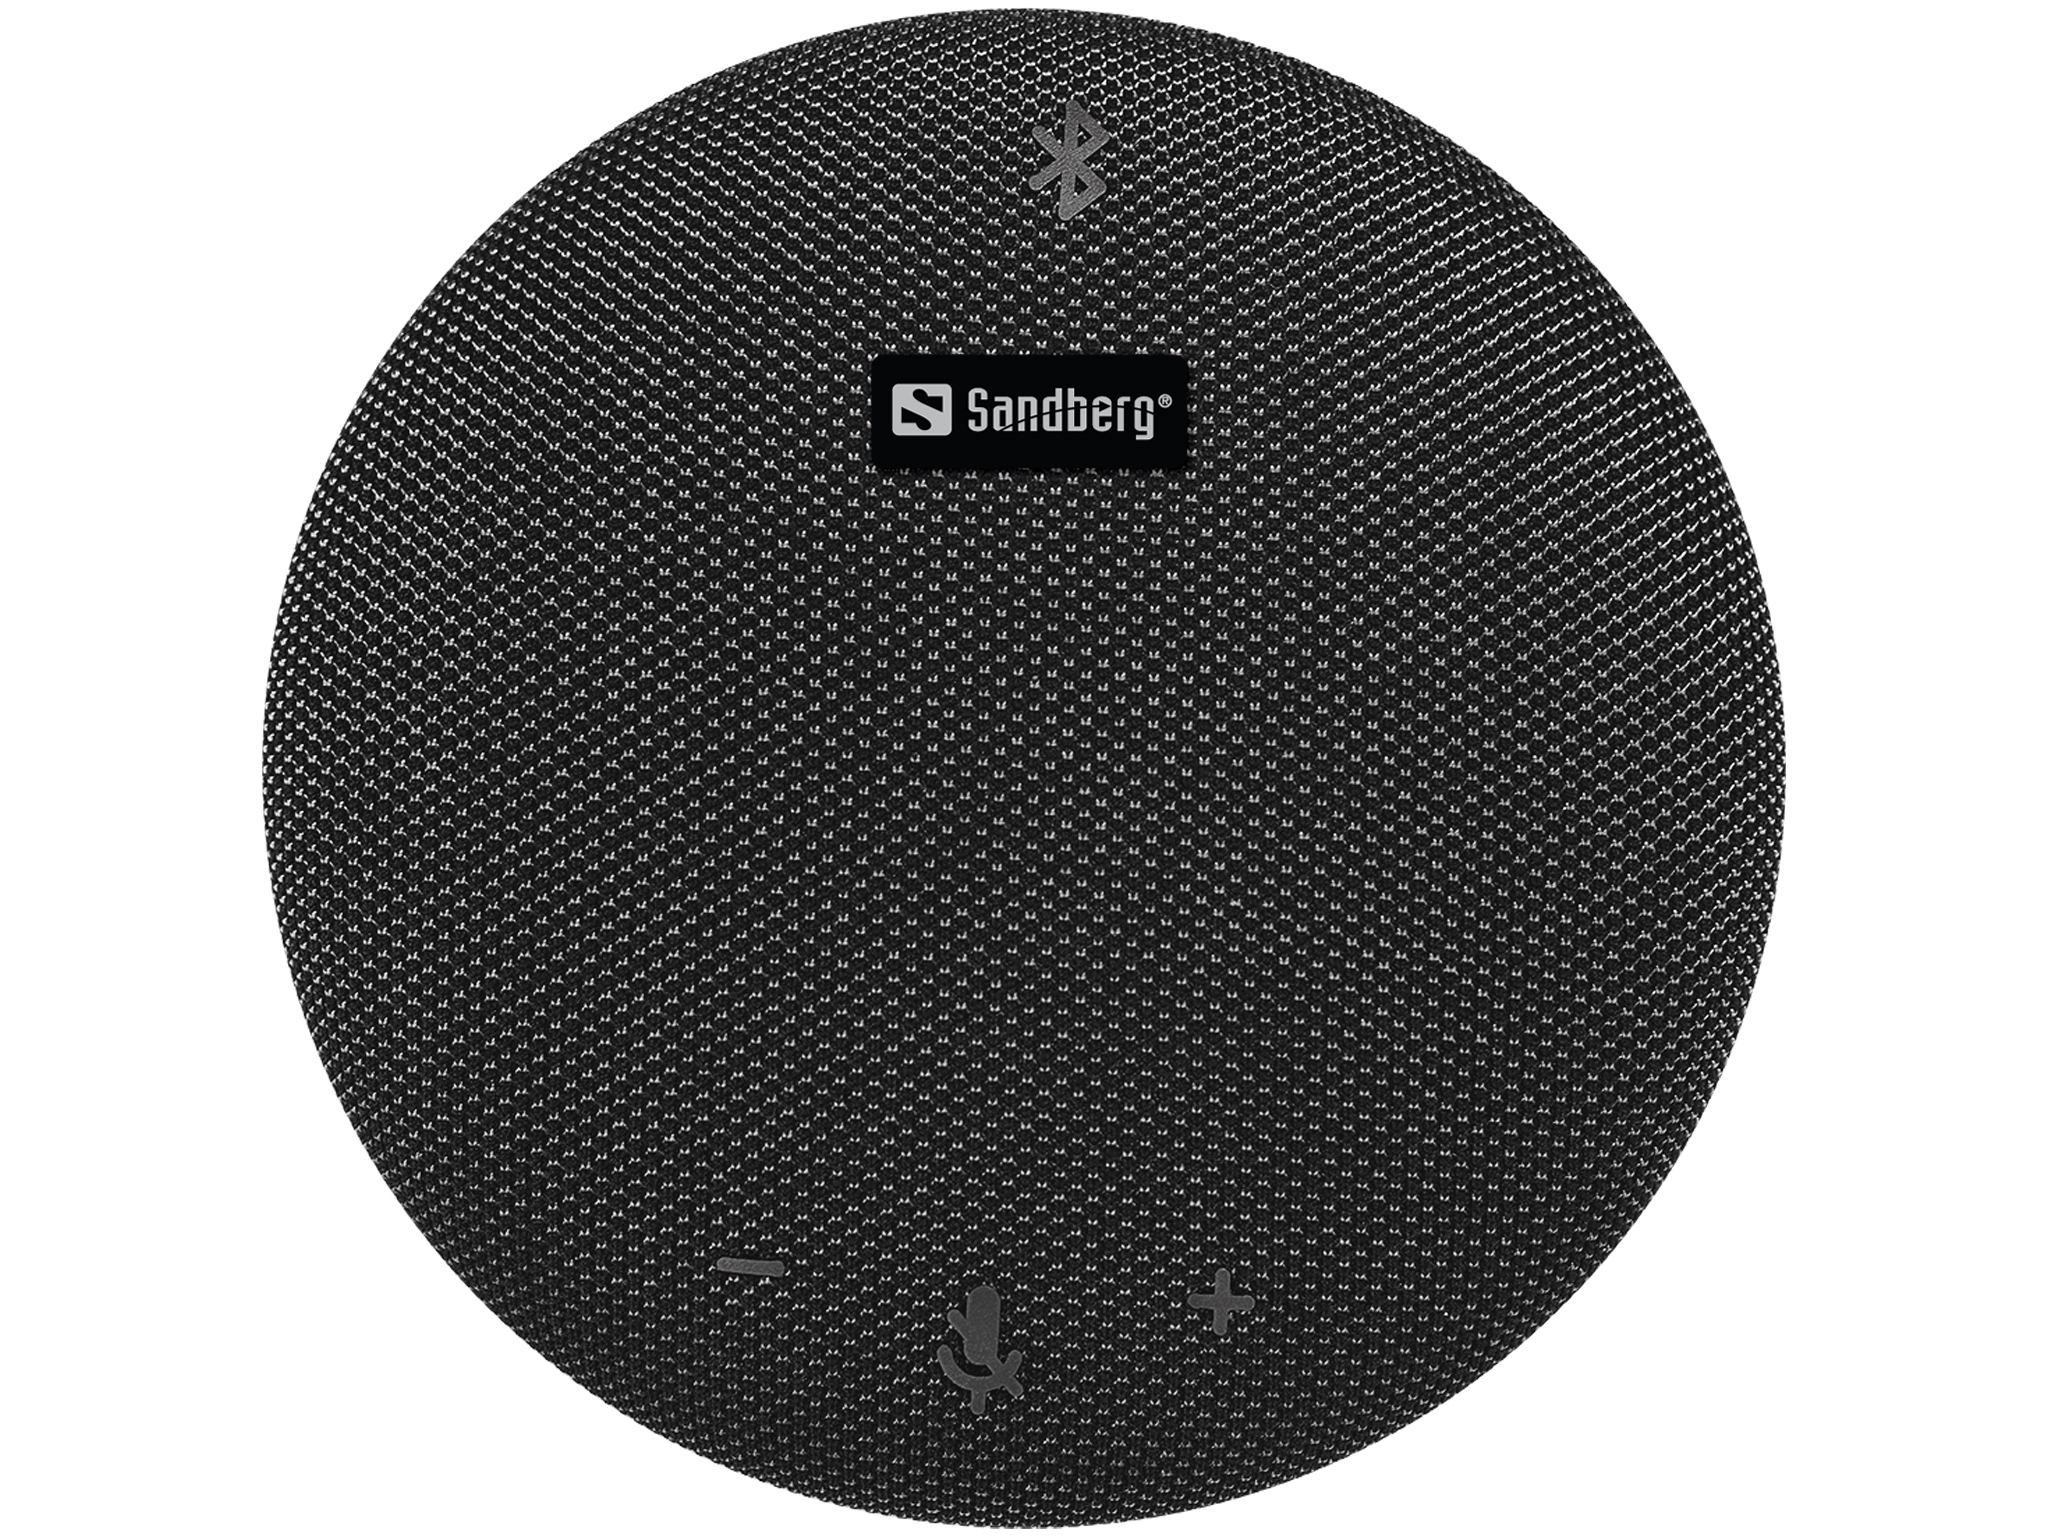 Sandberg Bluetooth Speakerphone Pro